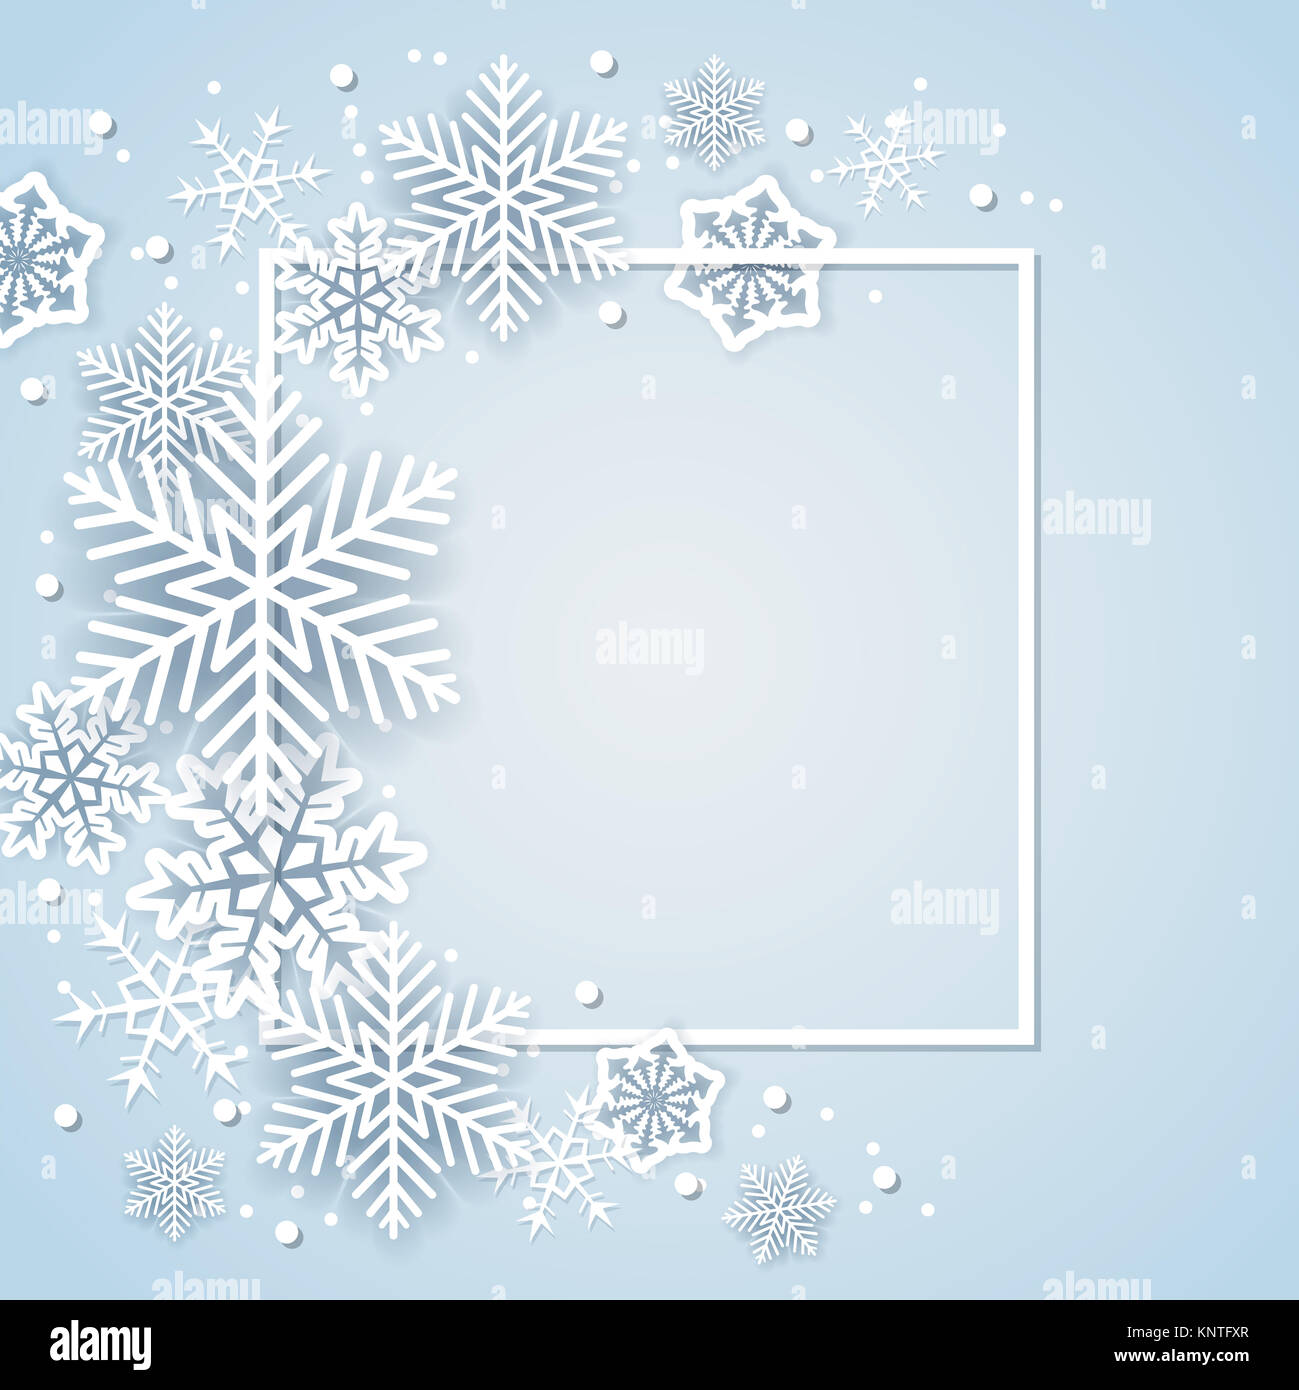 Holiday lo sfondo con il Libro bianco di fiocchi di neve in frame. Abstract banner di Natale. Foto Stock